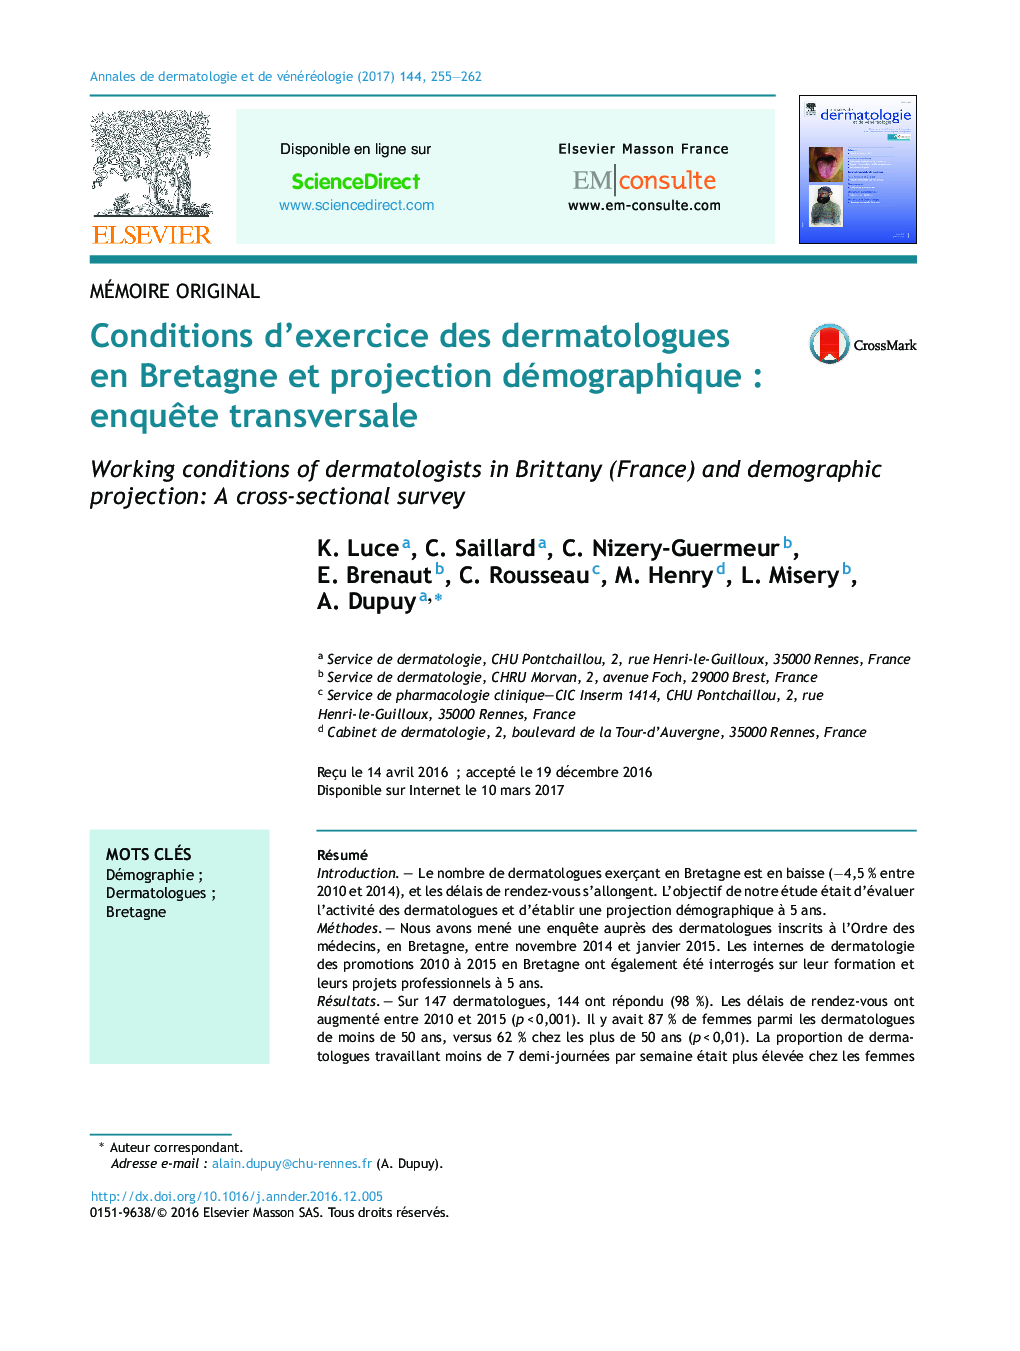 Conditions d'exercice des dermatologues en Bretagne et projection démographiqueÂ : enquÃªte transversale